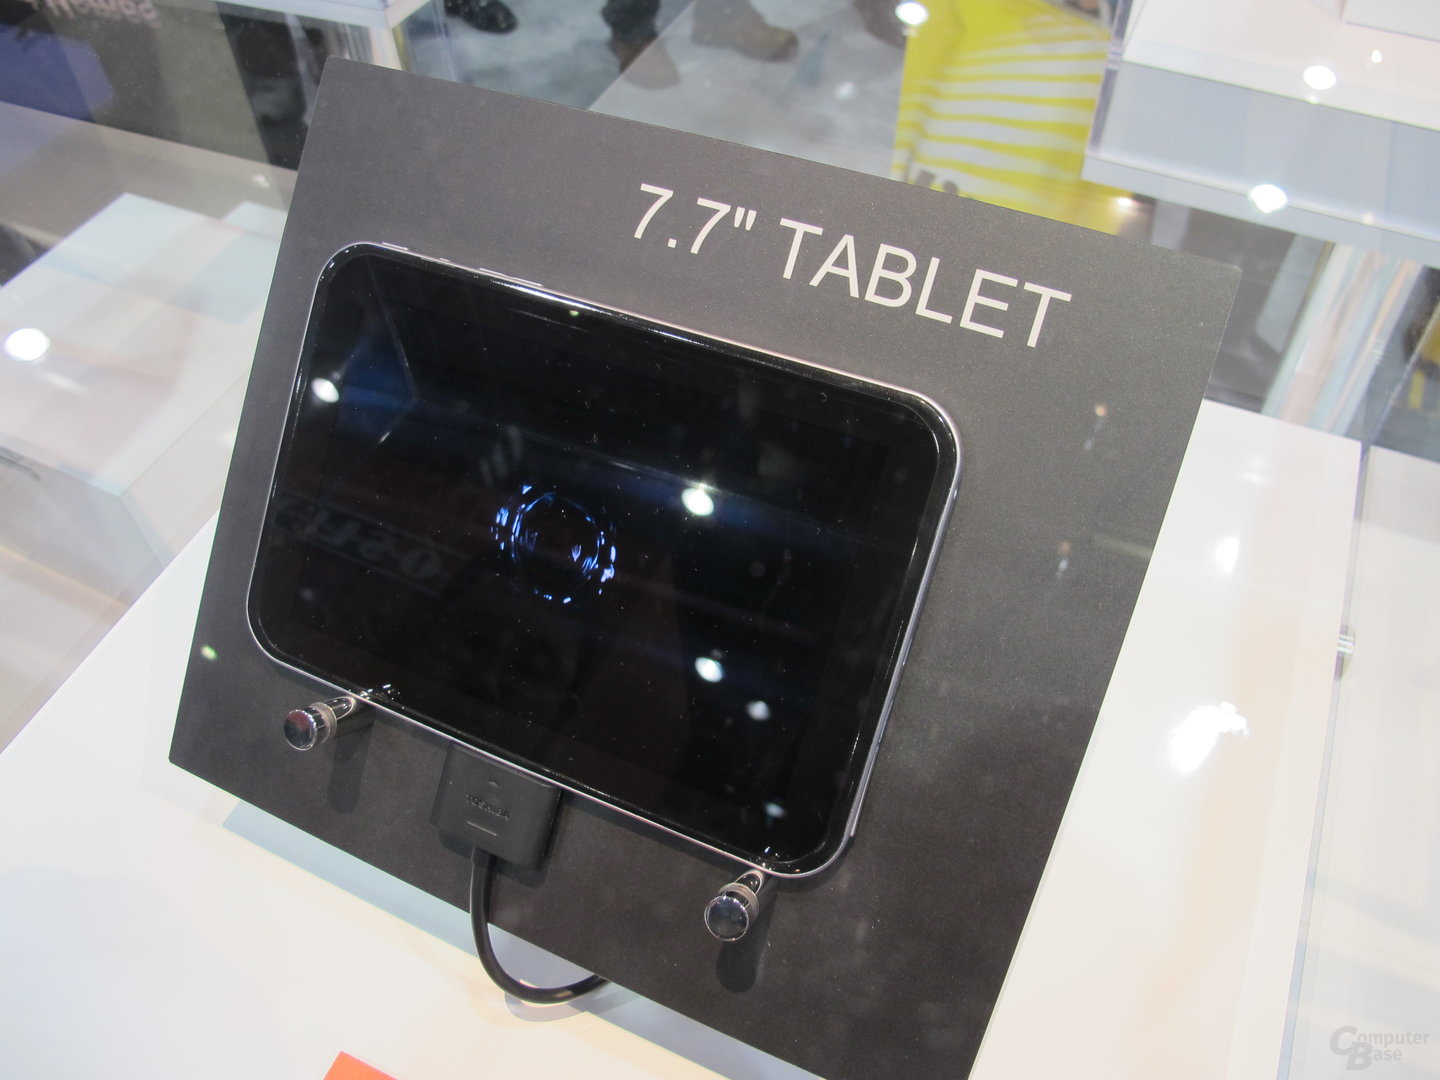 Toshiba 7,7“ Tablet